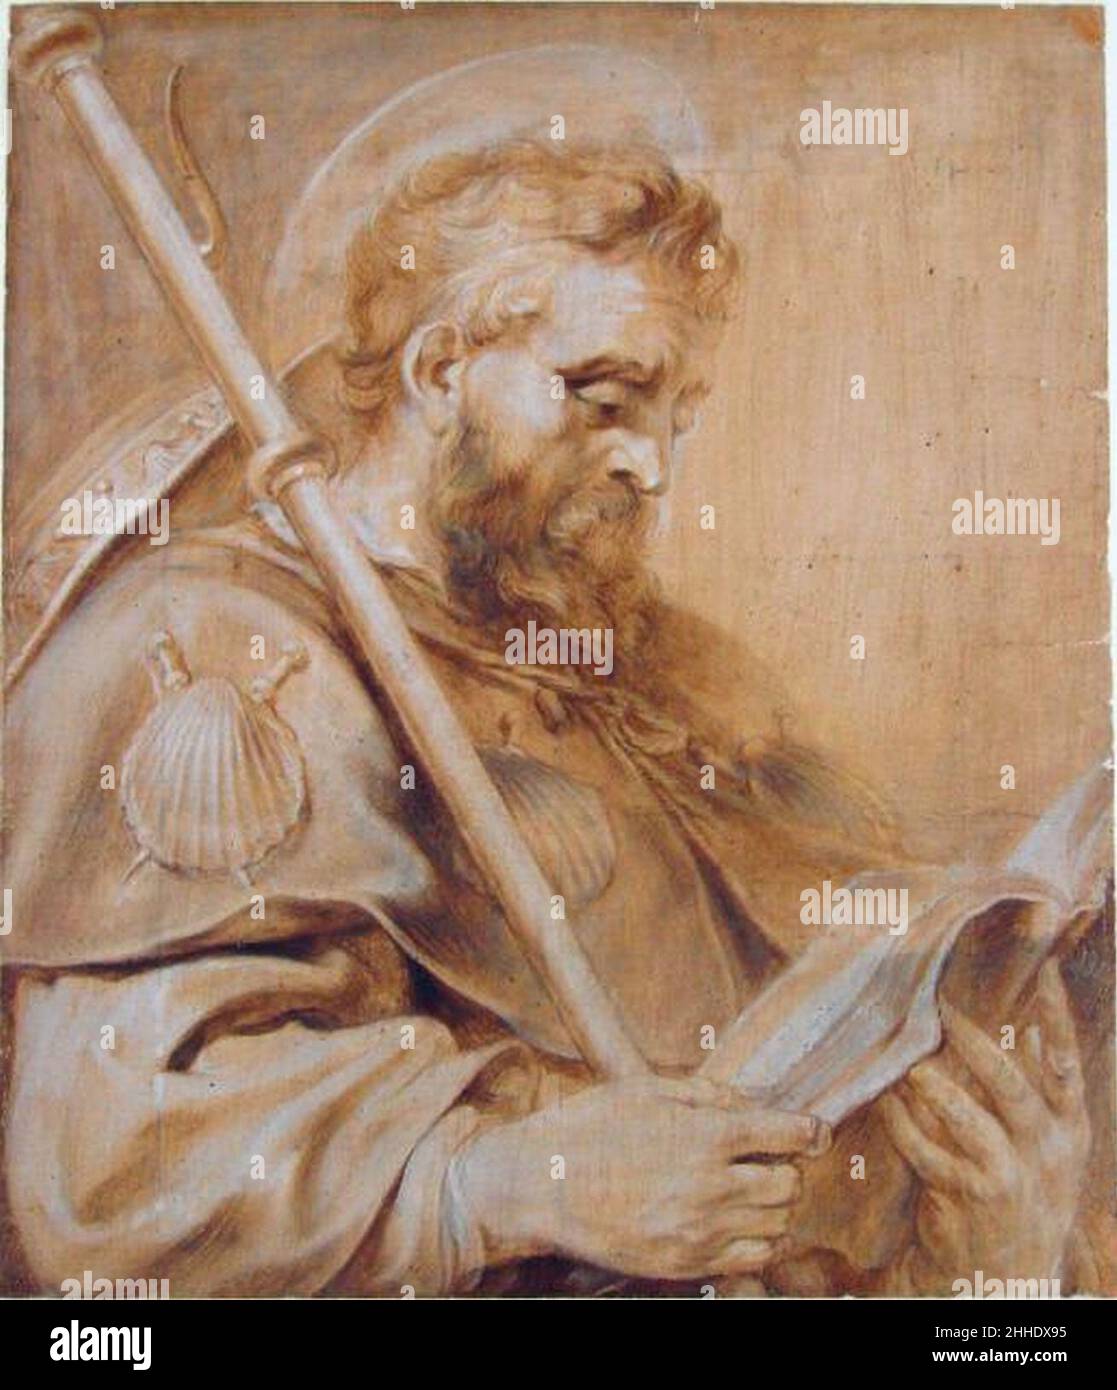 St. James the Elder by Pieter Claesz. Soutman. Stock Photo